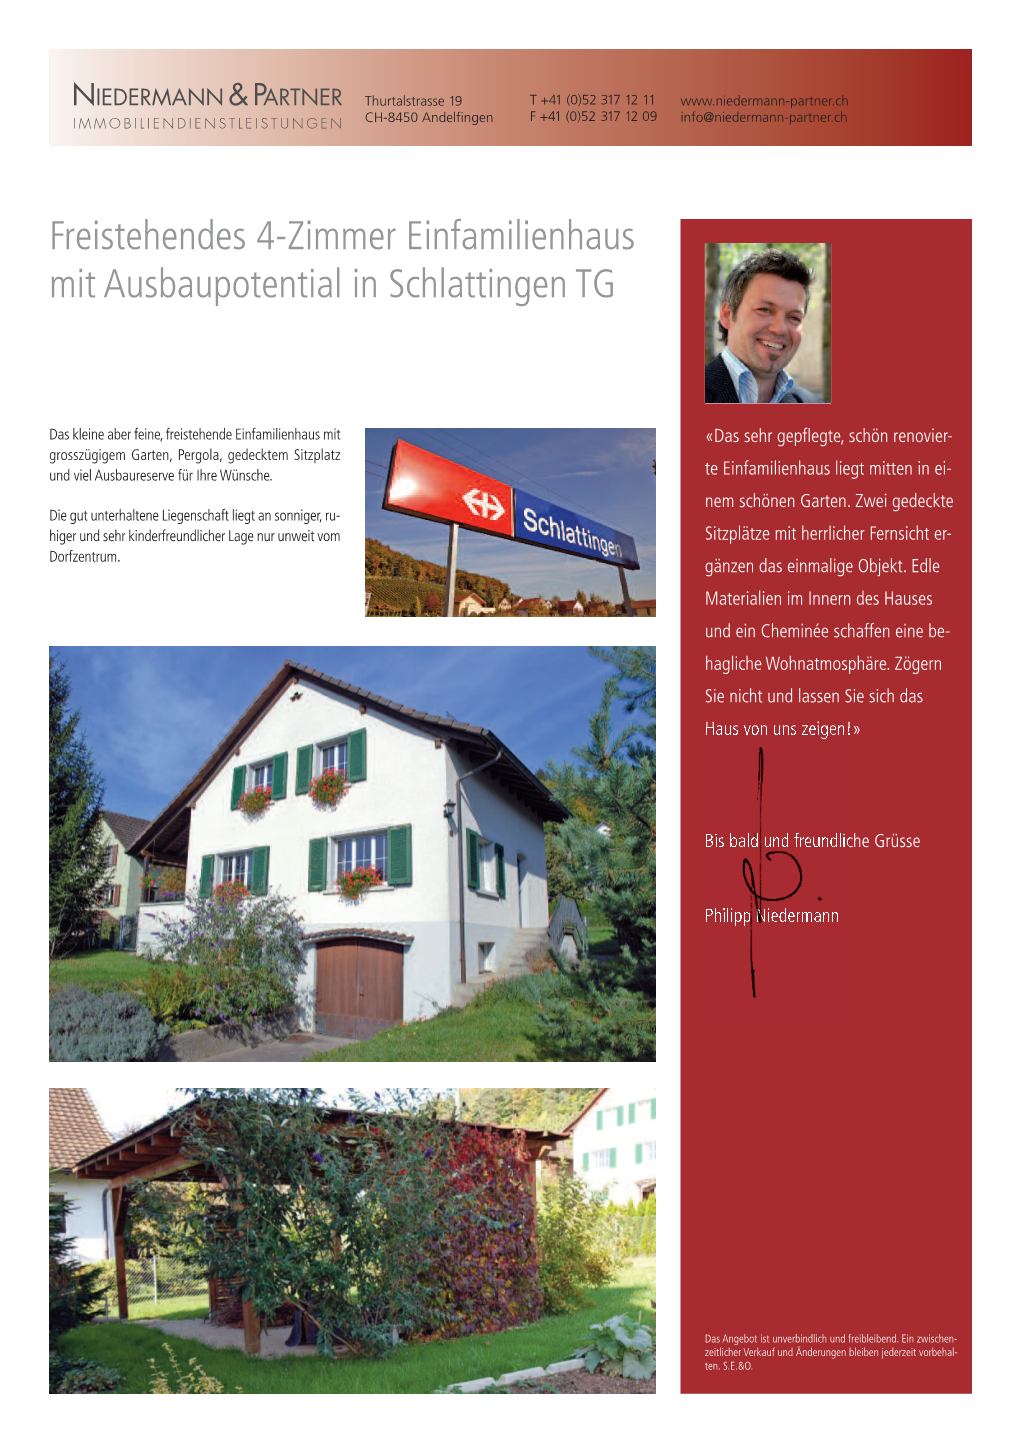 Freistehendes 4-Zimmer Einfamilienhaus Mit Ausbaupotential in Schlattingen TG